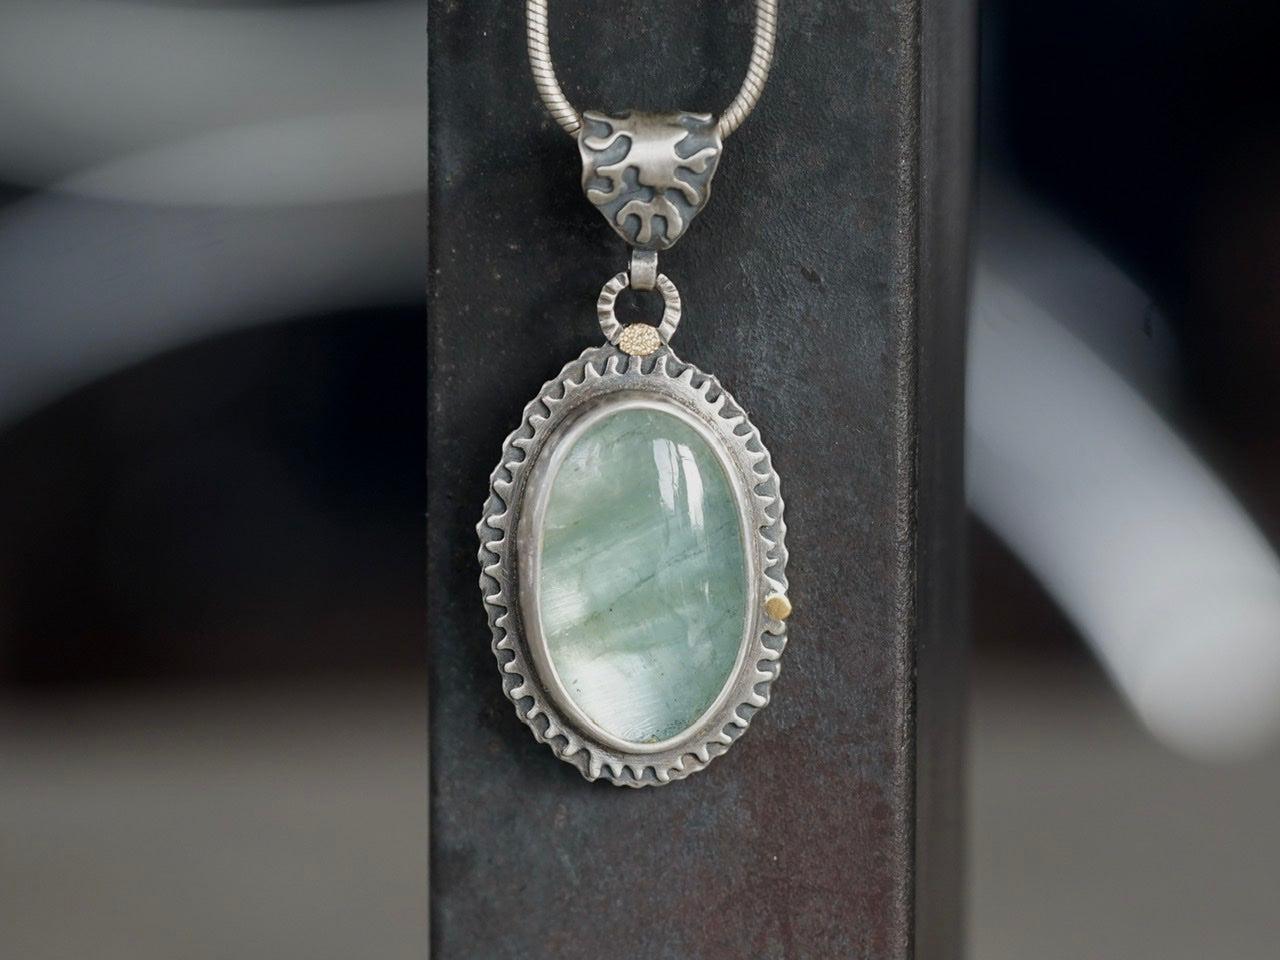 Aquamarine pendant